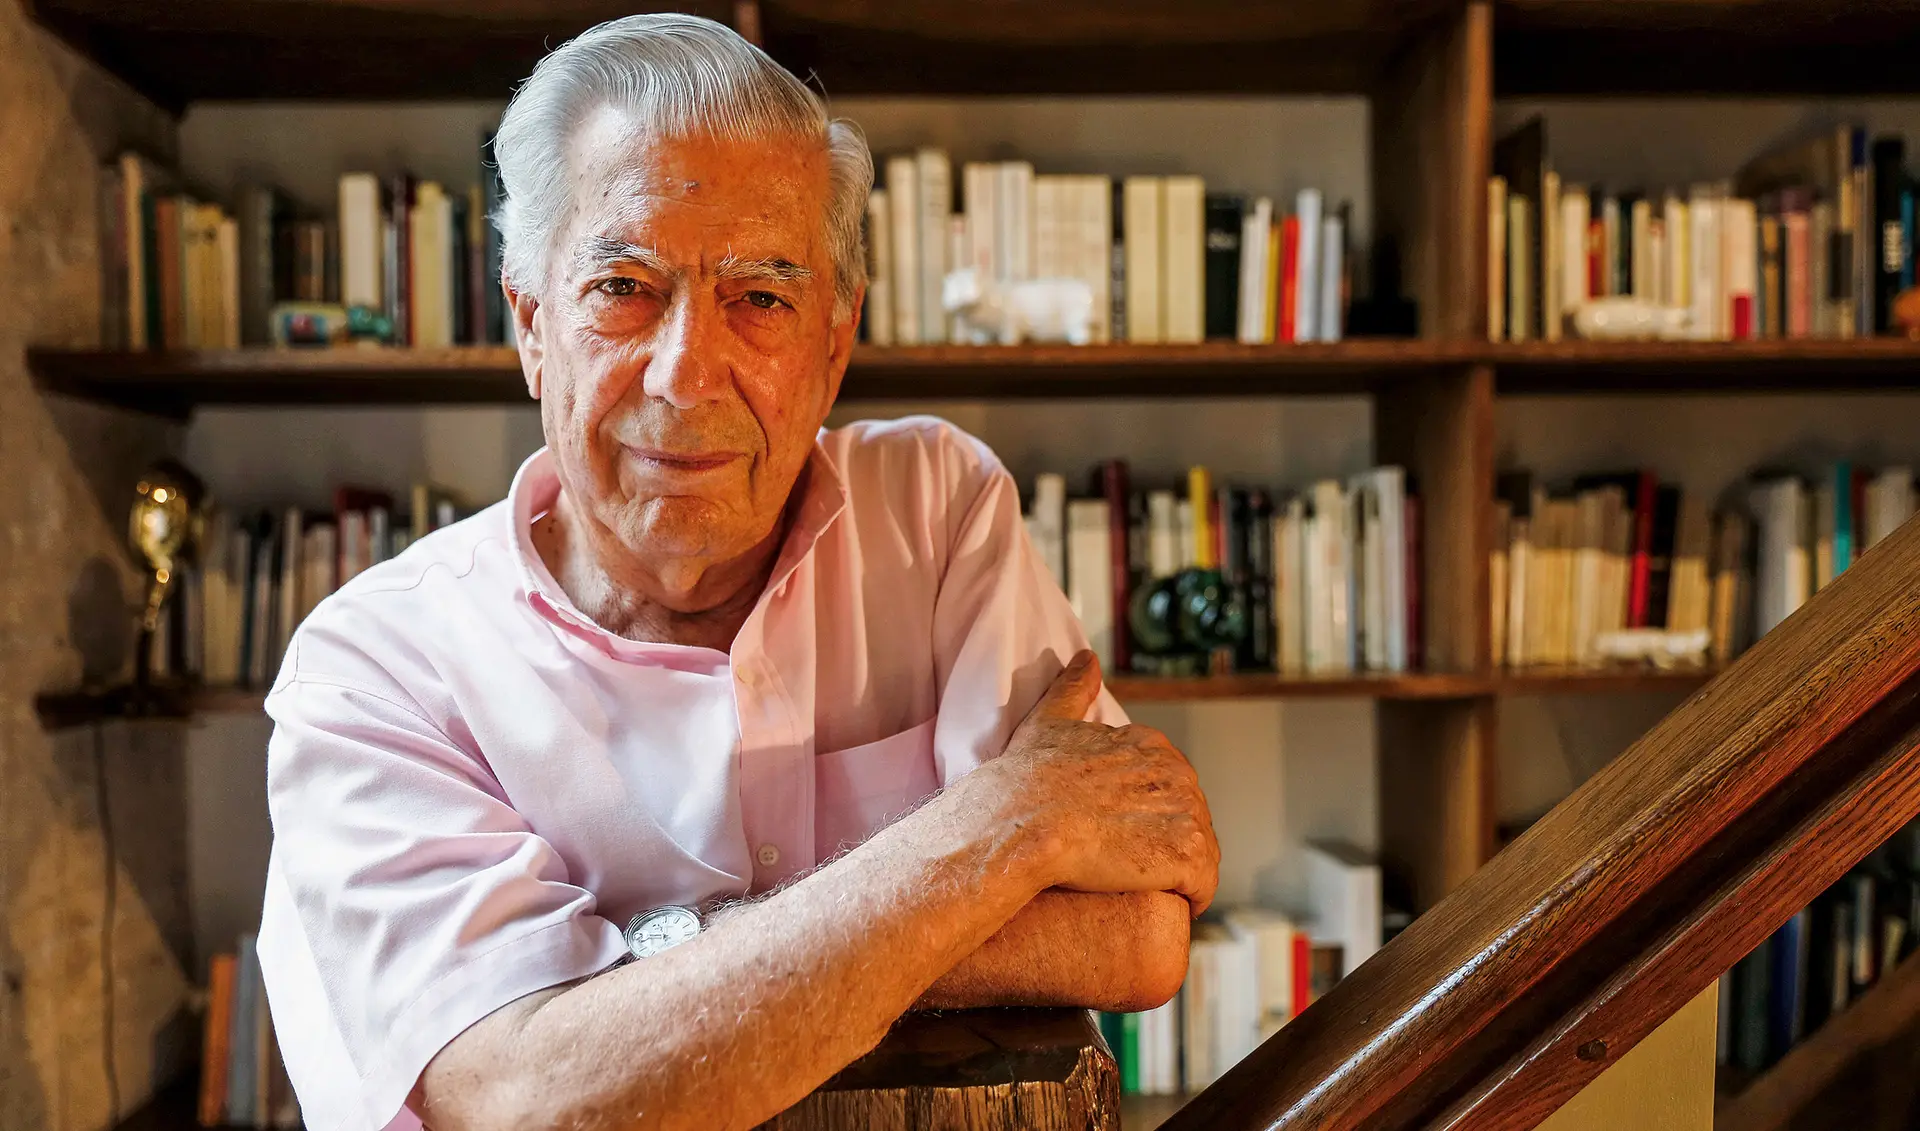 "A ficção salvará a democracia", promete Vargas Llosa ao entrar na Academia Francesa